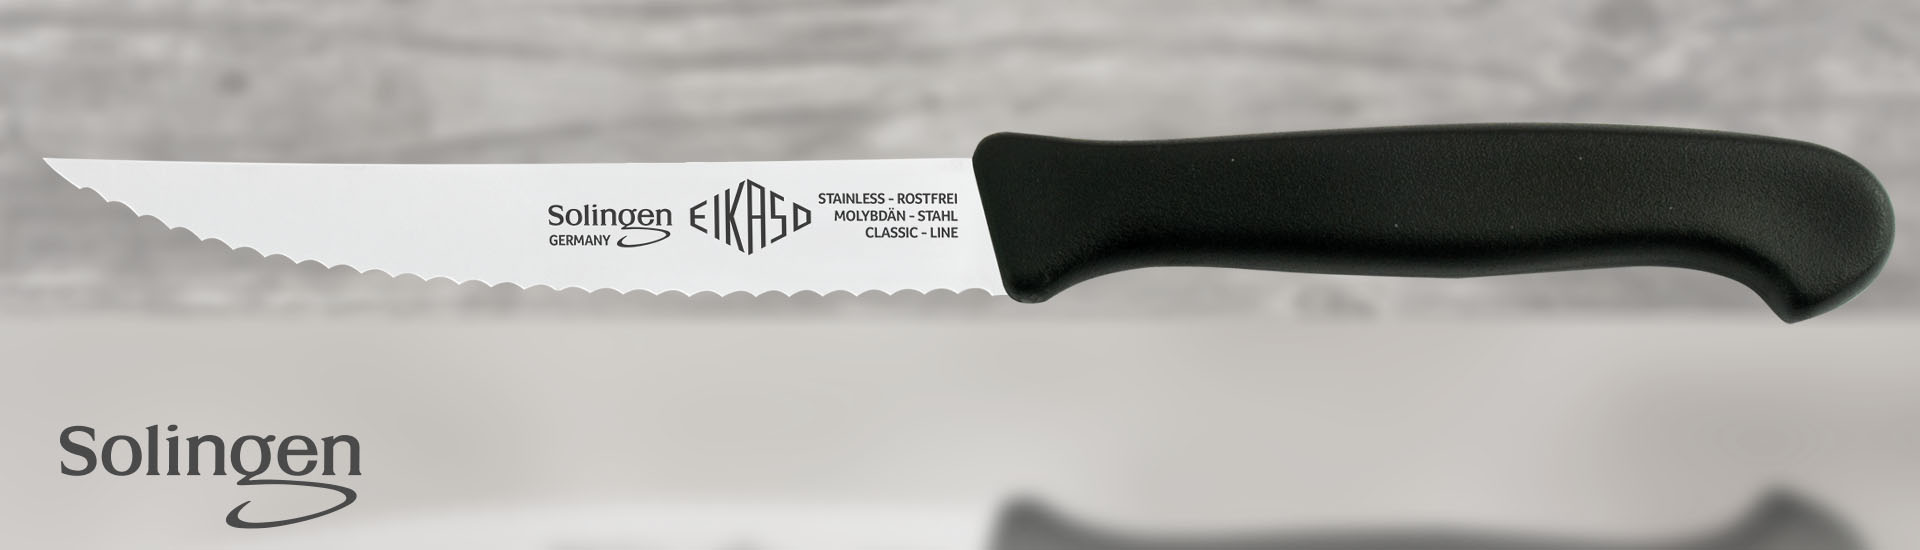 Original Eikaso Solingen Steakmesser mit Säge 9cm